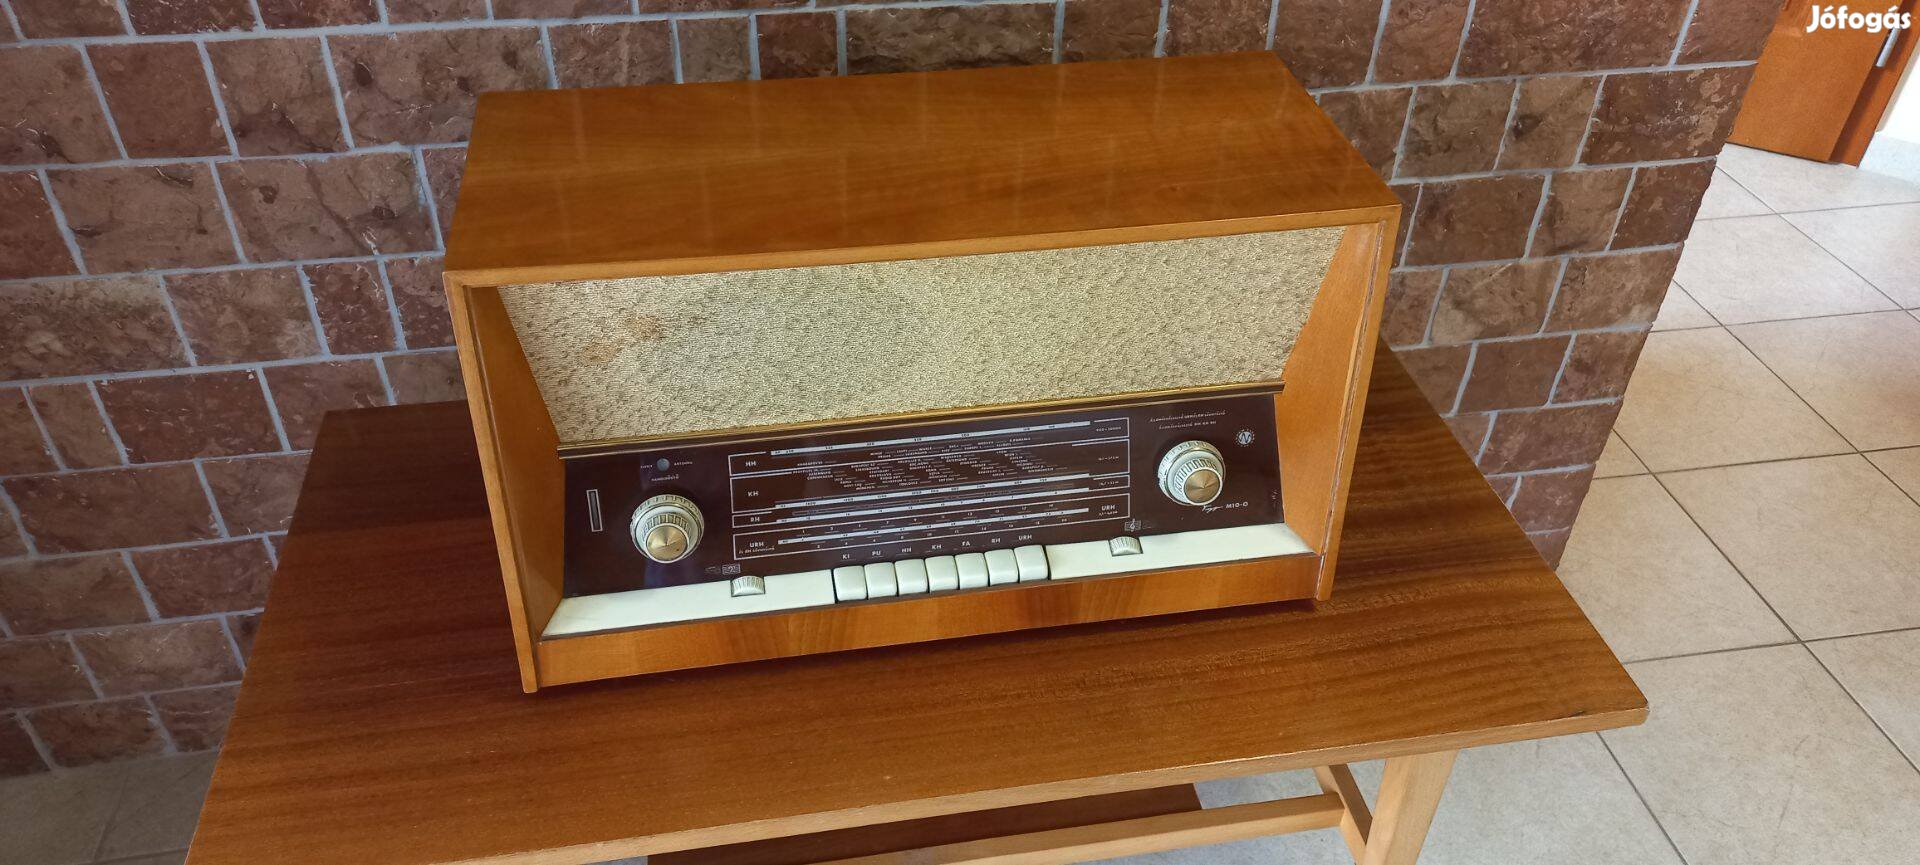 Nagyon szép retro rádió